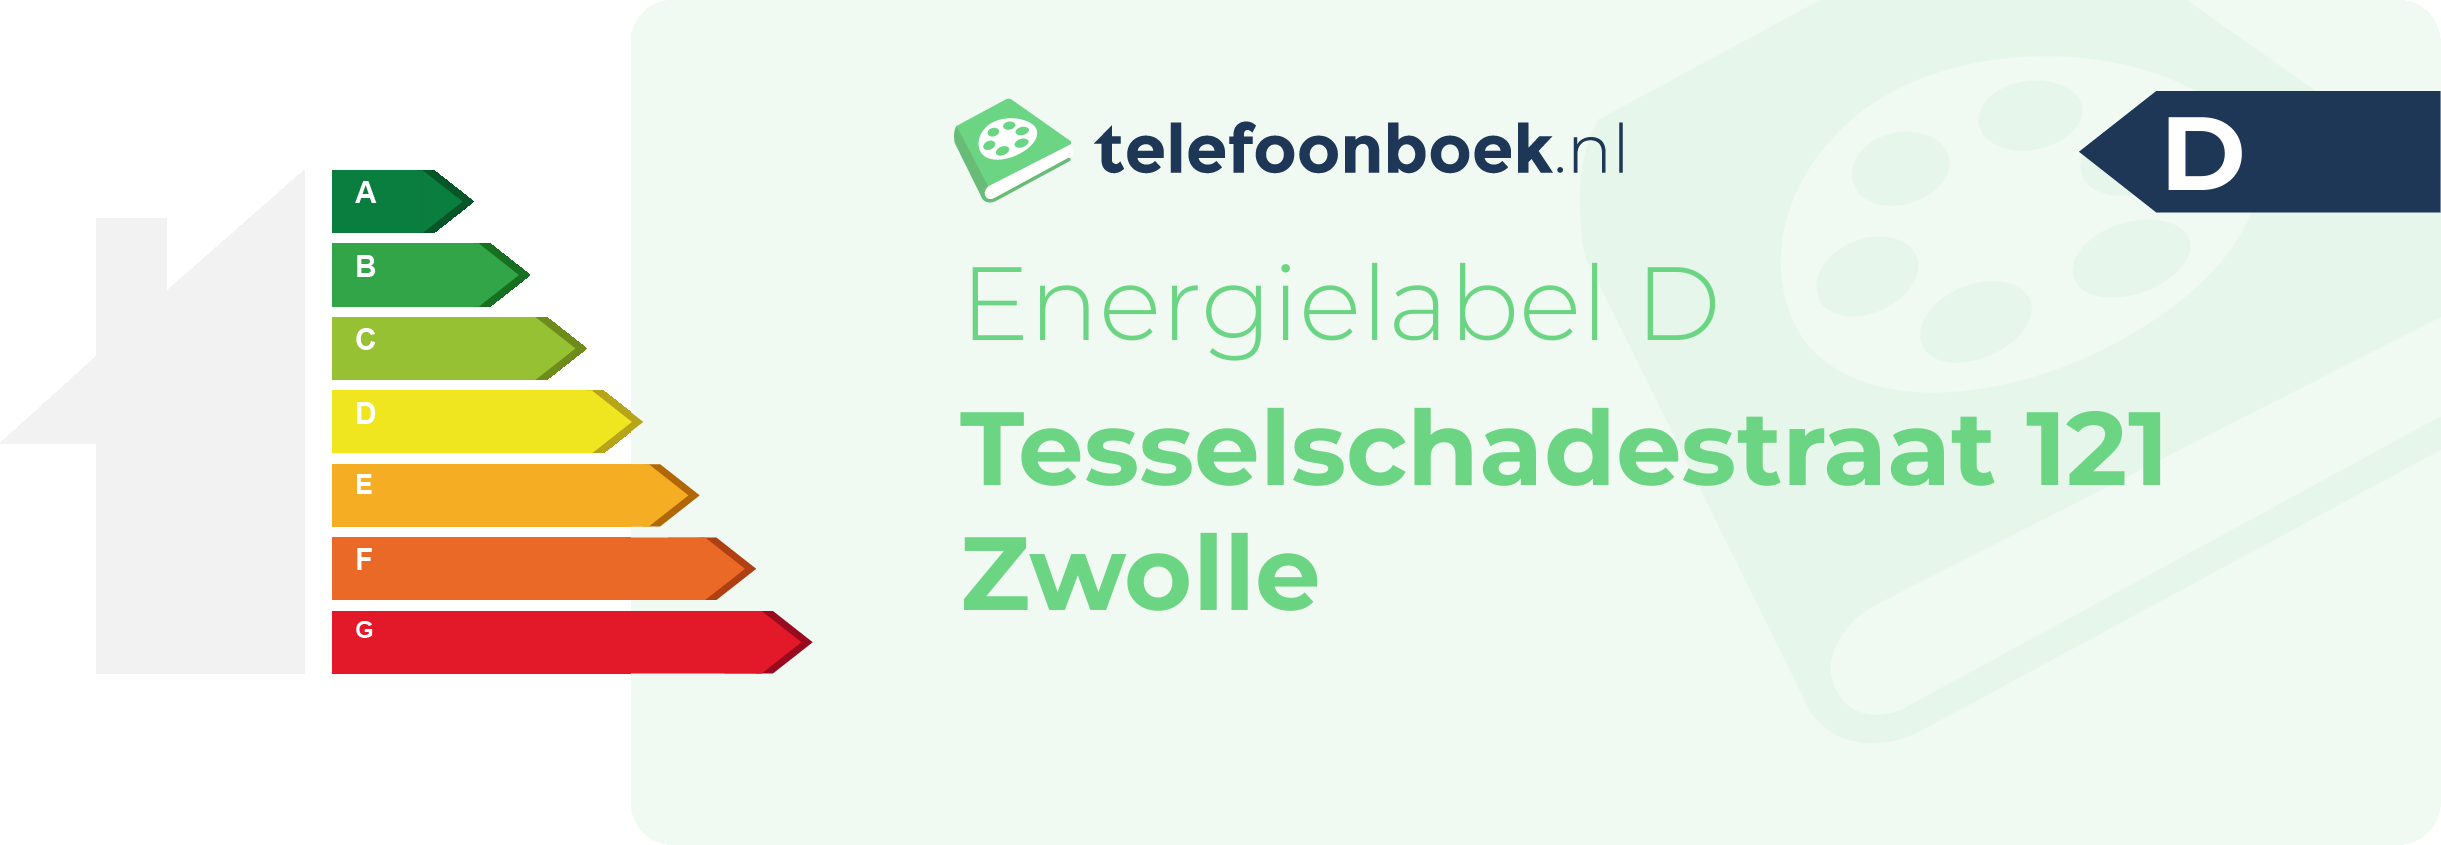 Energielabel Tesselschadestraat 121 Zwolle